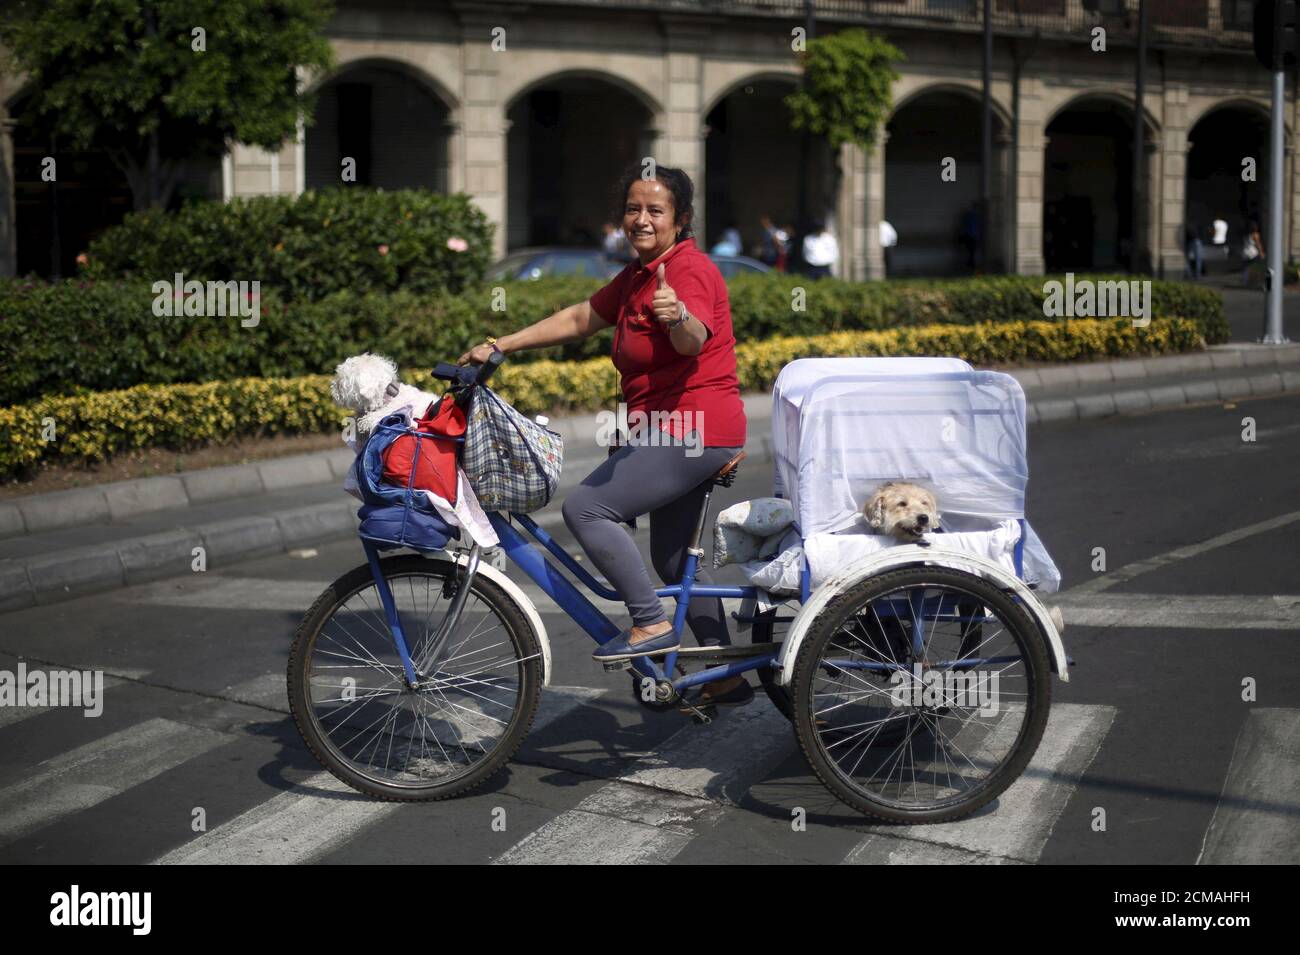 Una mujer hace gestos después de participar con otros ciclistas para formar una forma de bicicleta con el objetivo de promover el ciclismo como modo de transporte y conmemorar el día de la bicicleta, que se celebra anualmente el 19 de abril, en la plaza Zócalo en la Ciudad de México, México, 10 de abril de 2016. REUTERS/Edgard Garrido Foto de stock